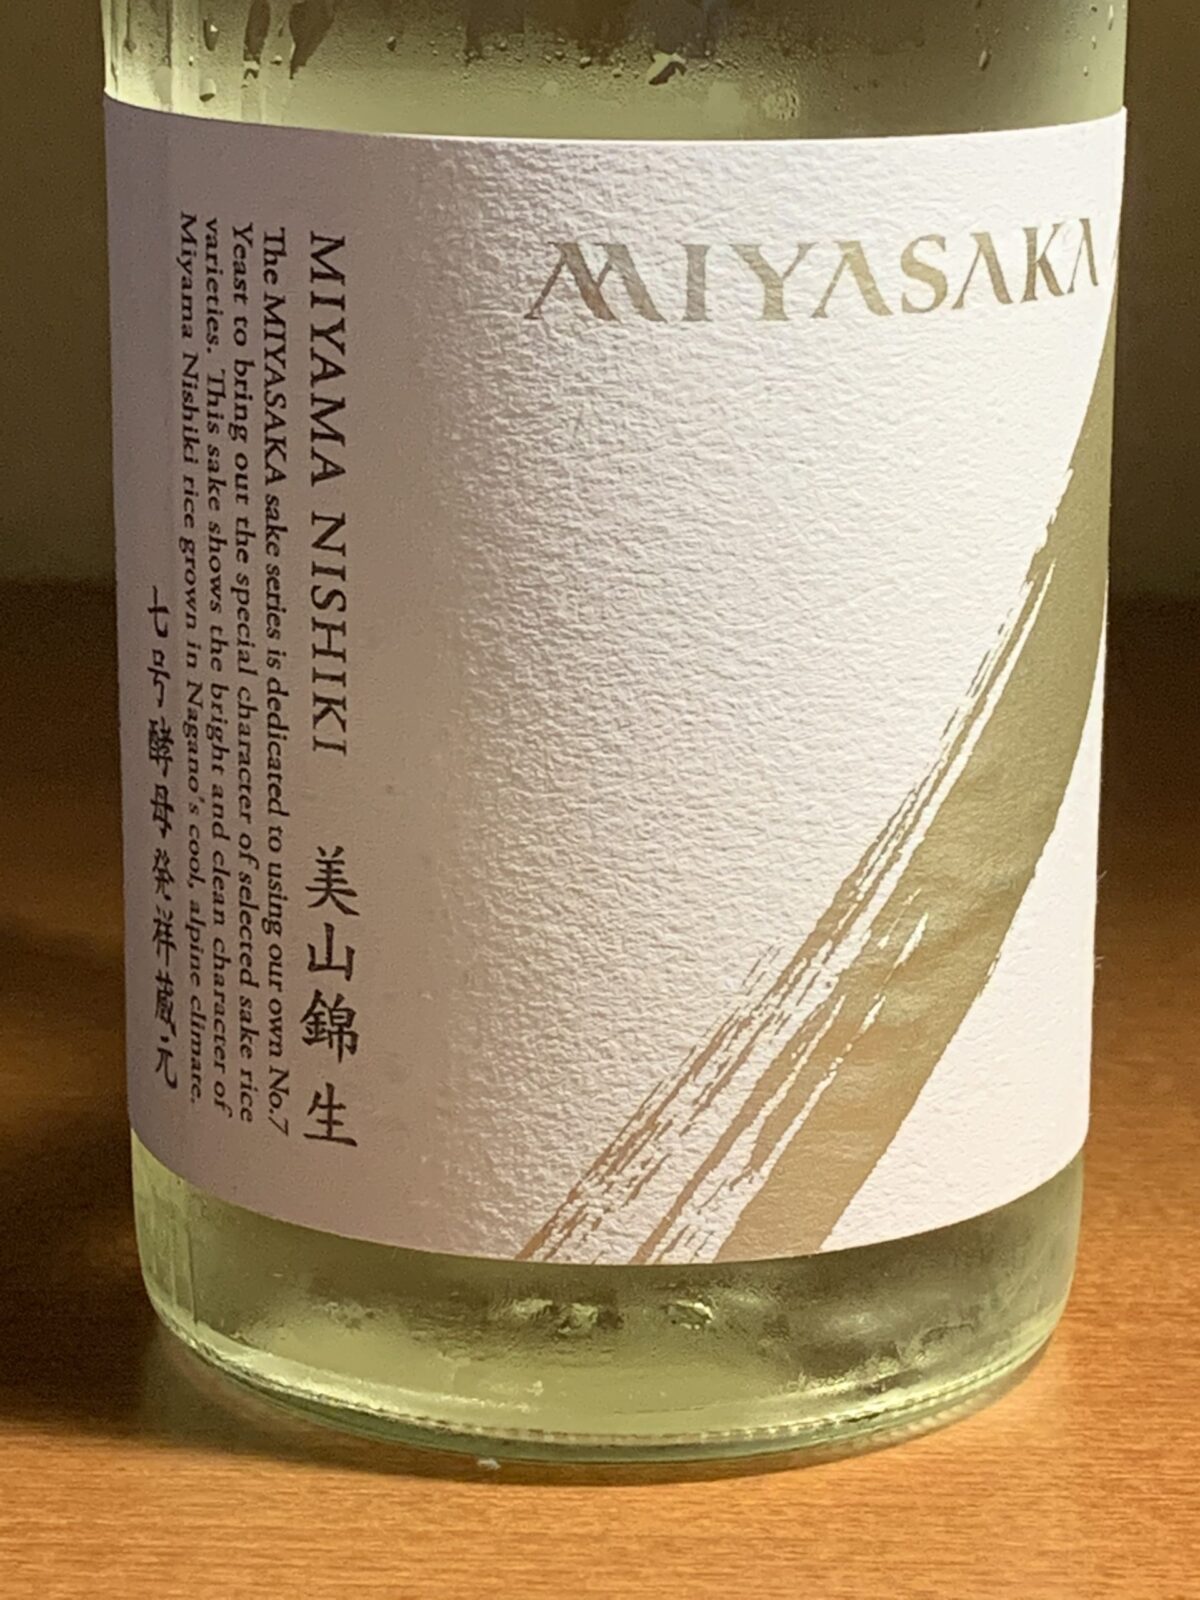 長野の真澄MIYASAKAは、繊細な酸味が効いたモダンな味わい